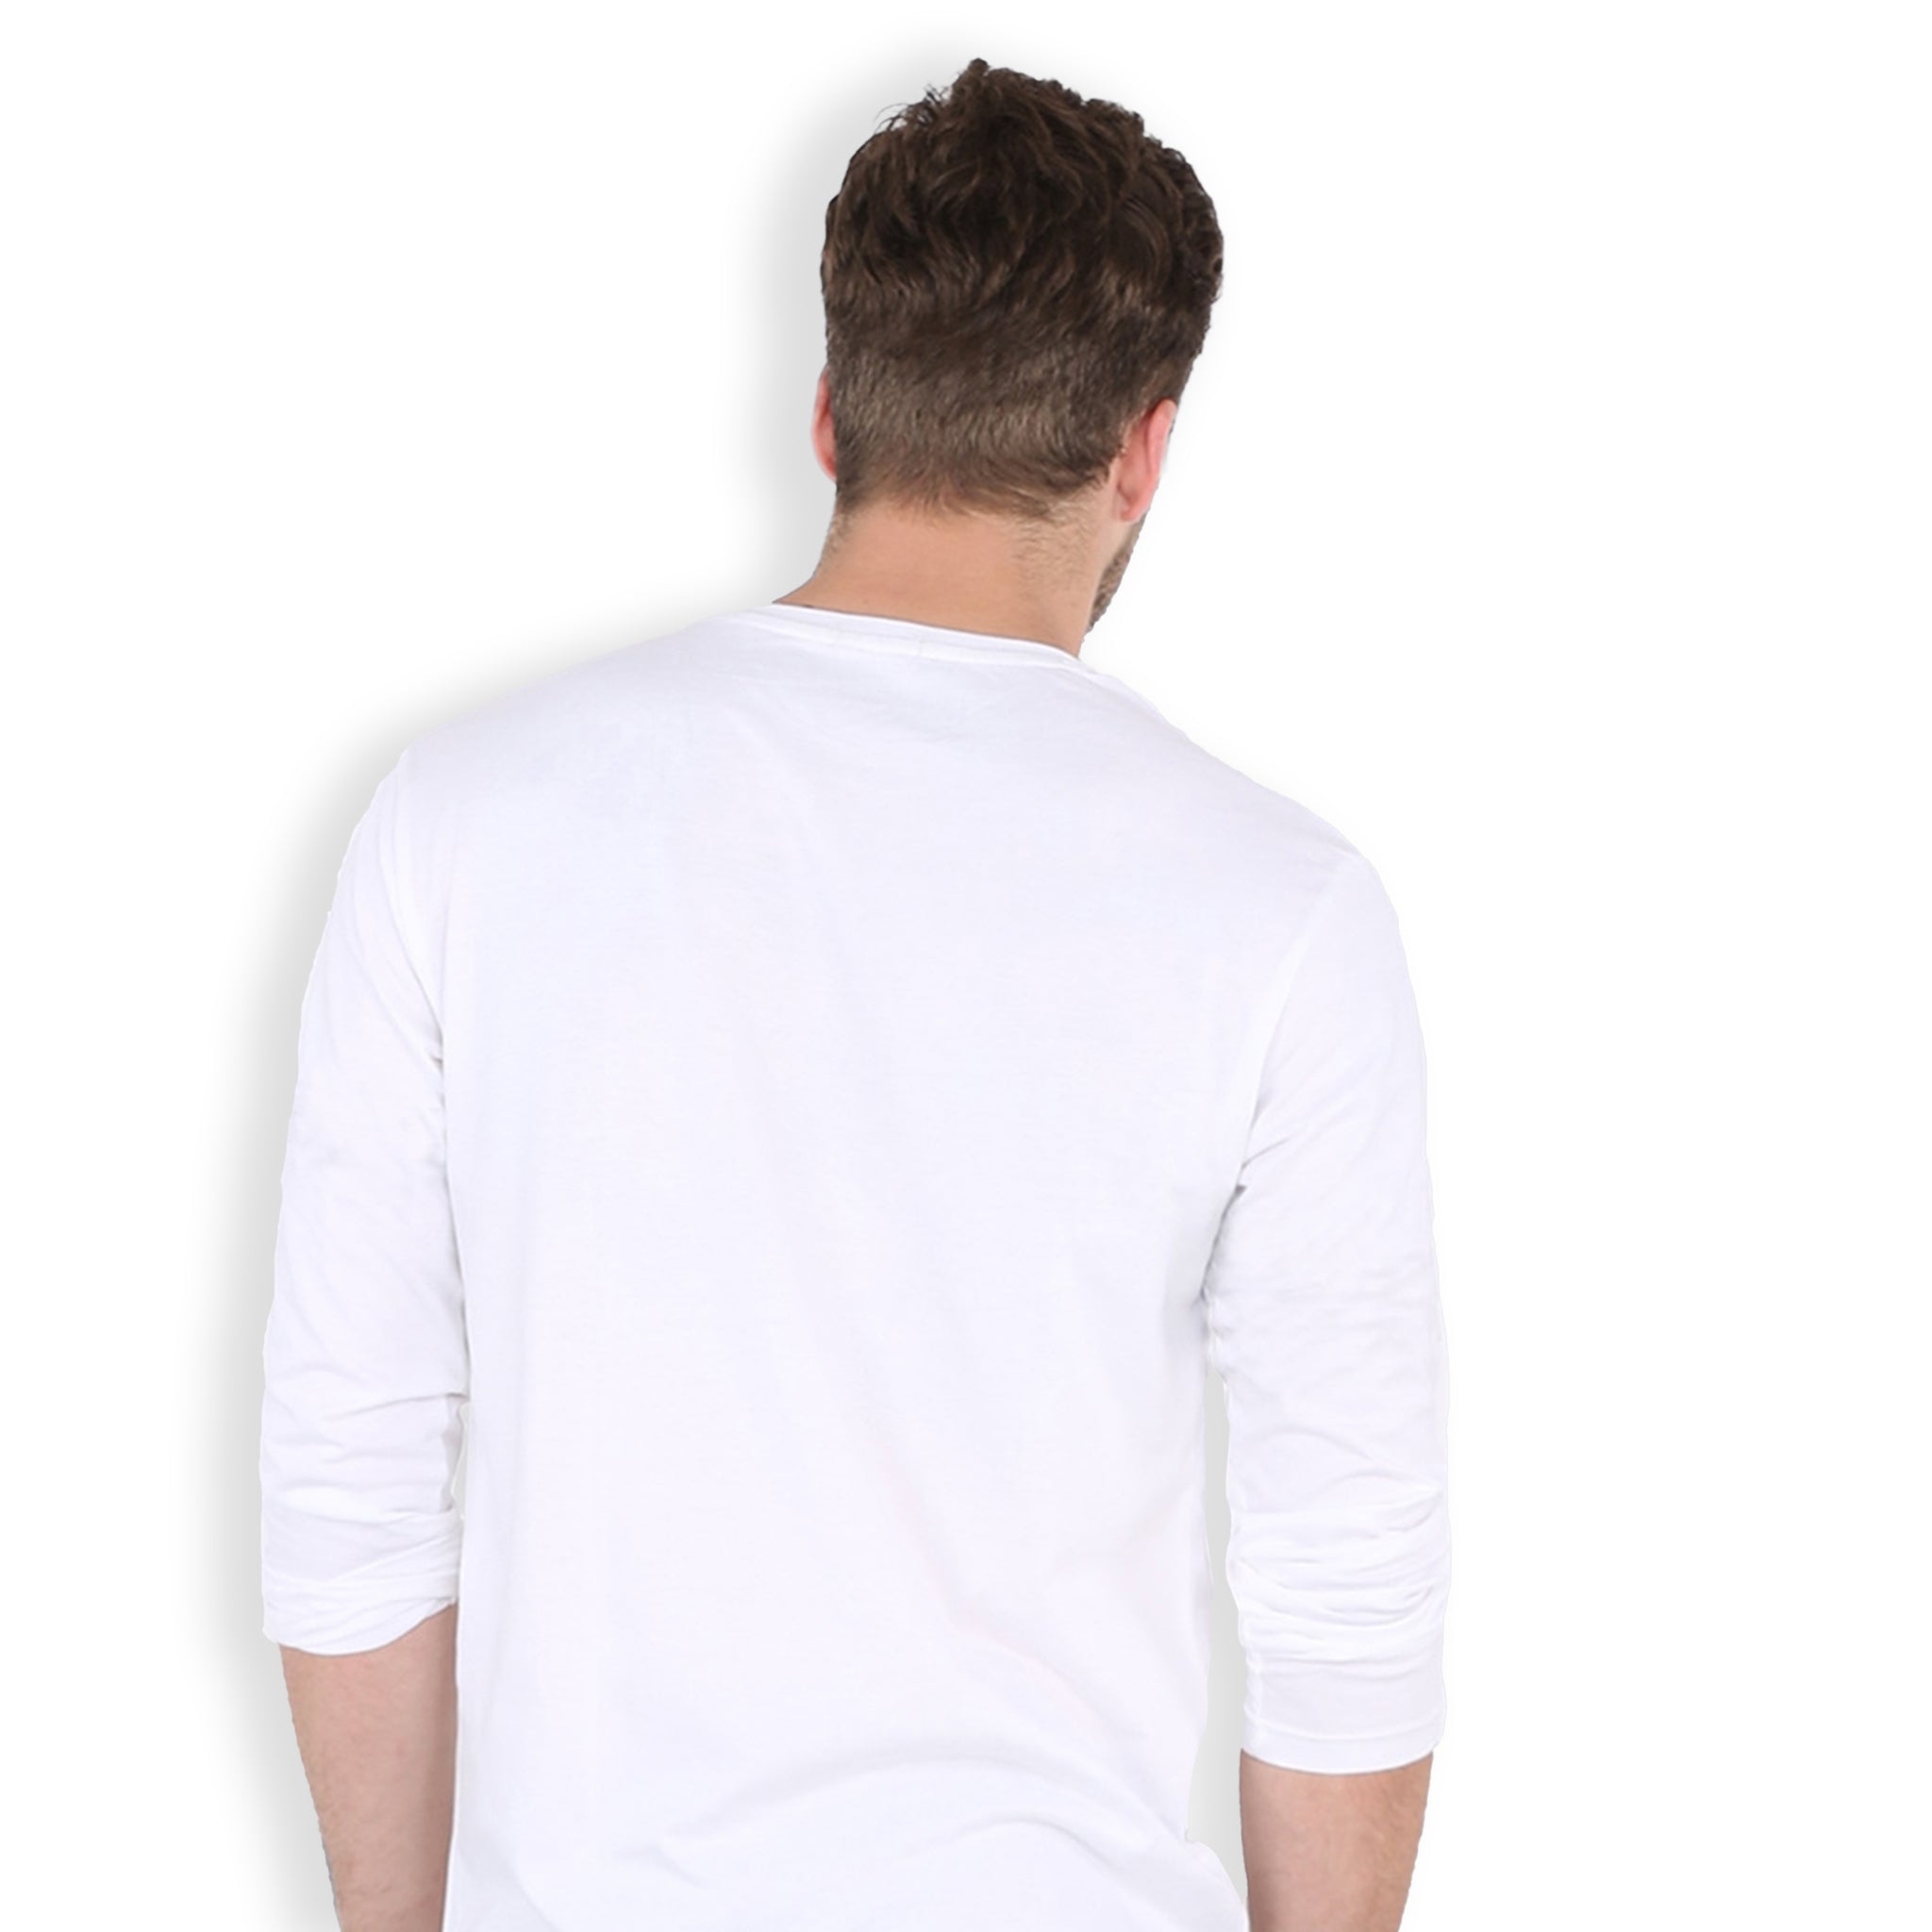 Bizzar's White Full Sleeve T-Shirt